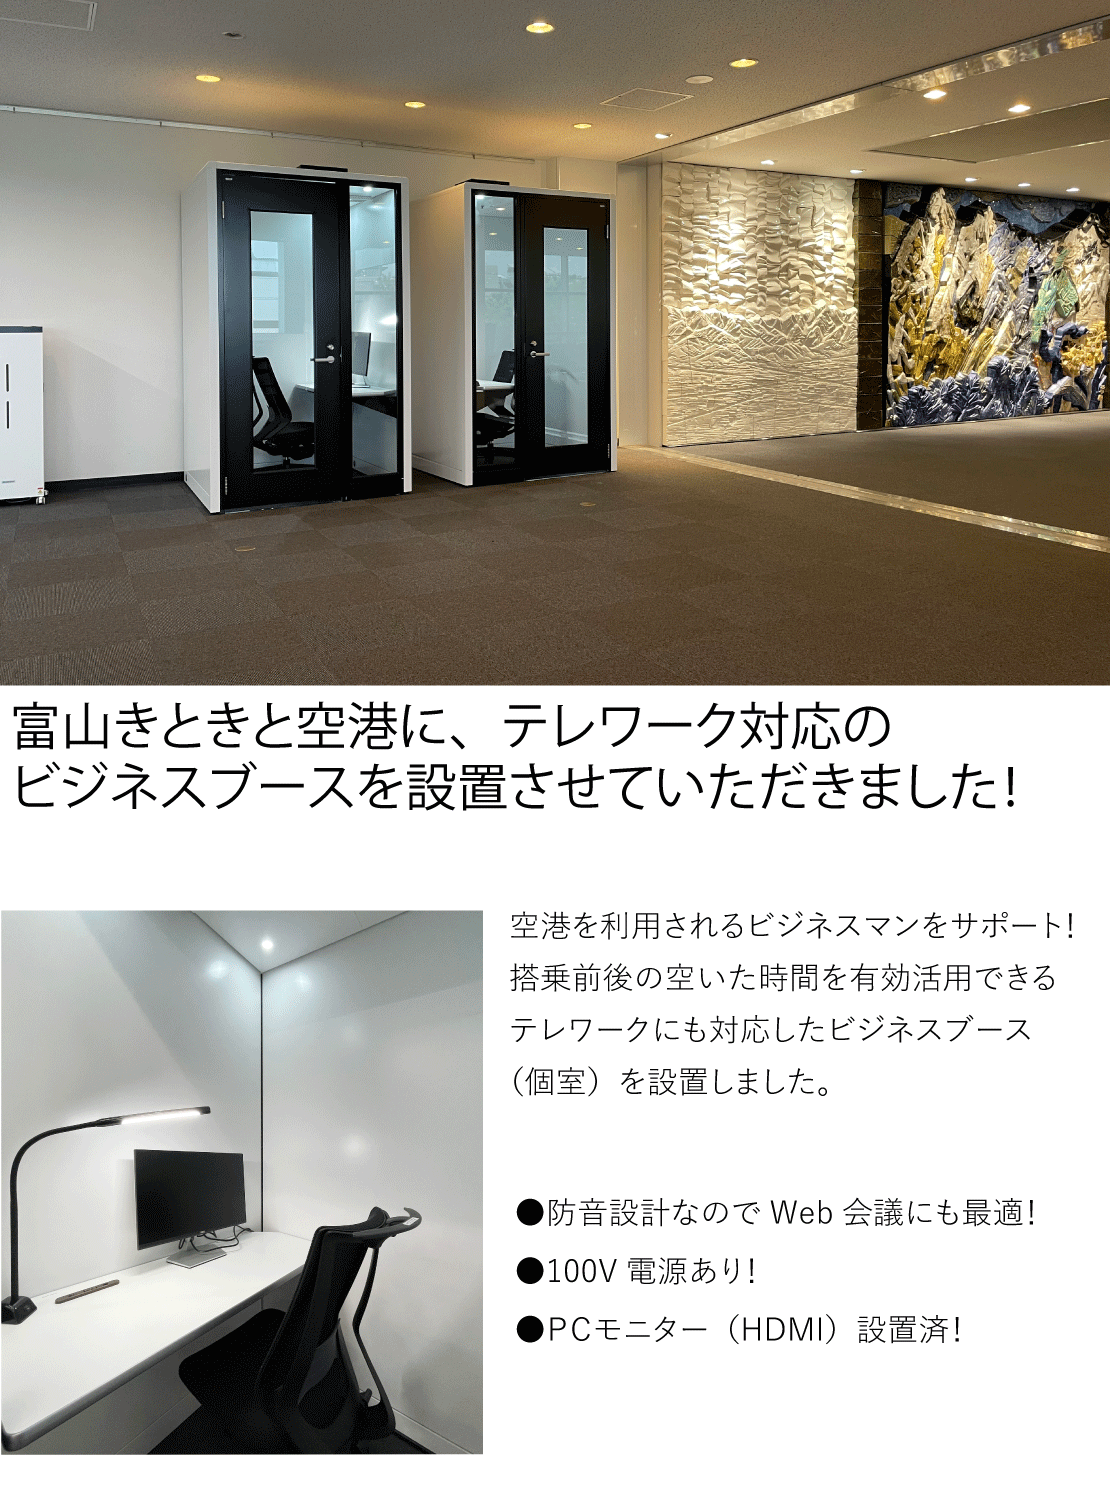 富山きときと空港に、テレワーク対応のビジネスブースを設置させていただきました！空港を利用されるビジネスマンをサポート！搭乗前後の空いた時間を有効活用できるテレワークにも対応したビジネスブース（個室）を設置しました。